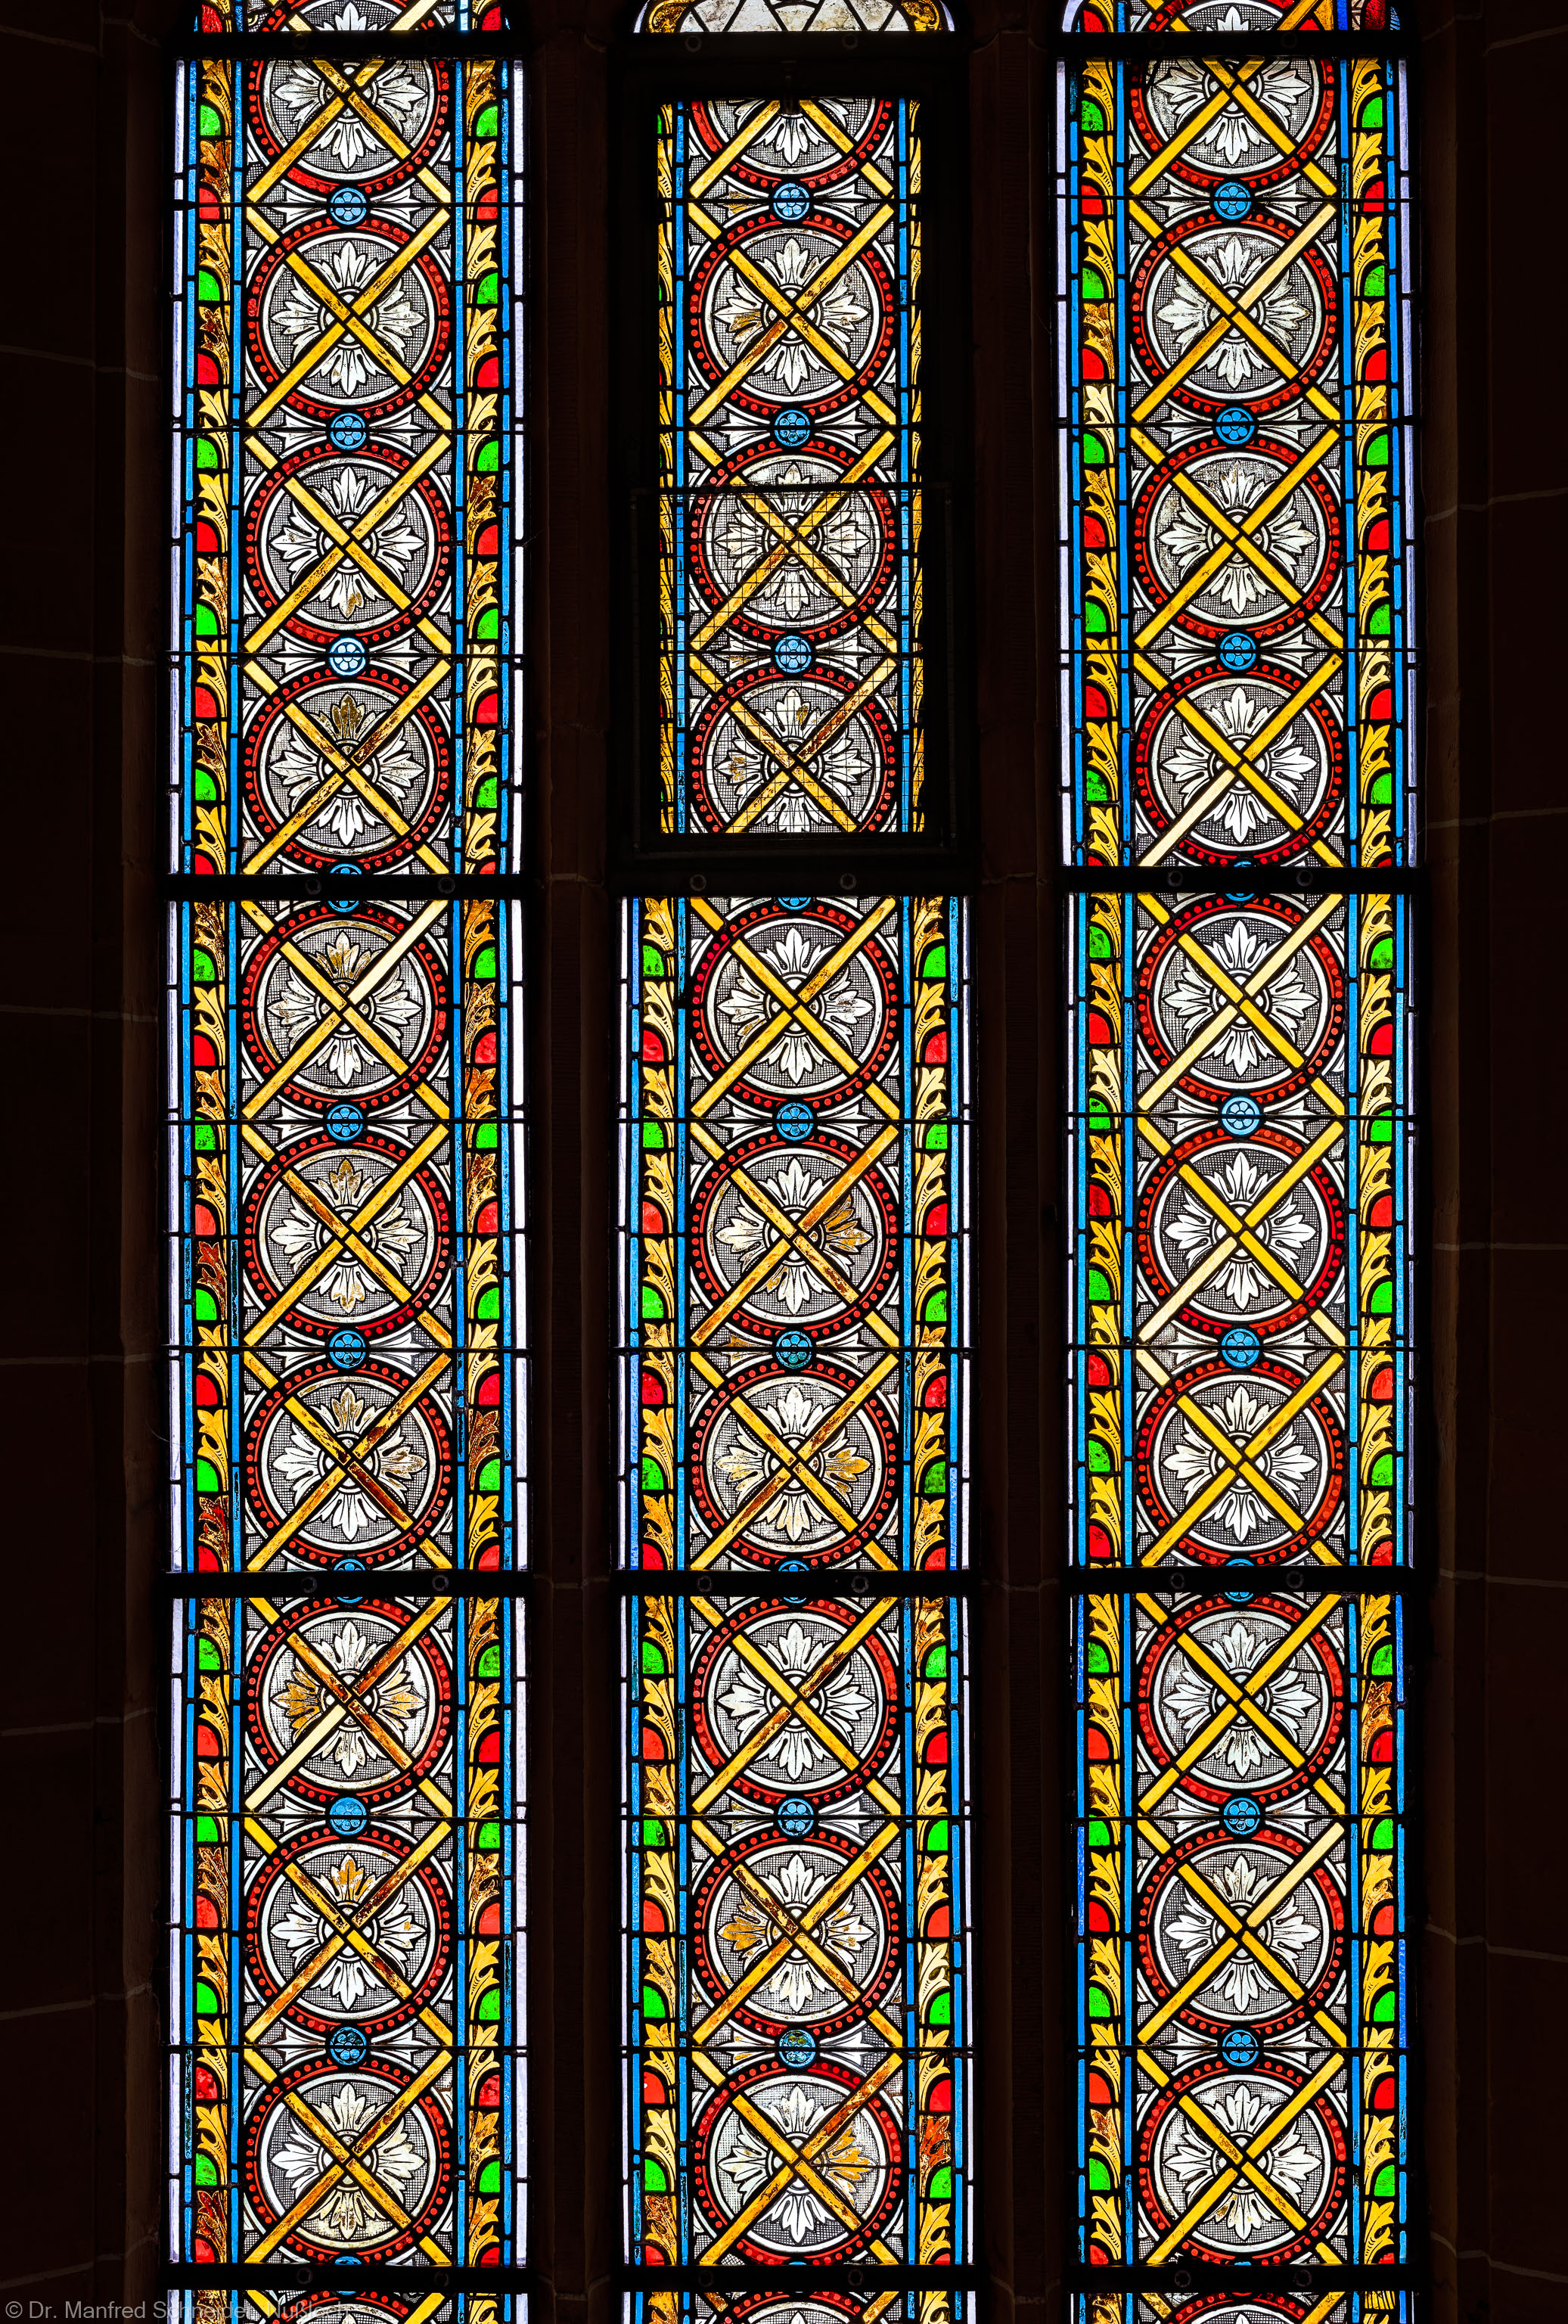 Heidelberg - Heiliggeistkirche - Südschiff - 4. Joch, von Westen aus gezählt - Ausschnitt aus dem Ornamentfenster (aufgenommen im Oktober 2015, am späten Nachmittag)